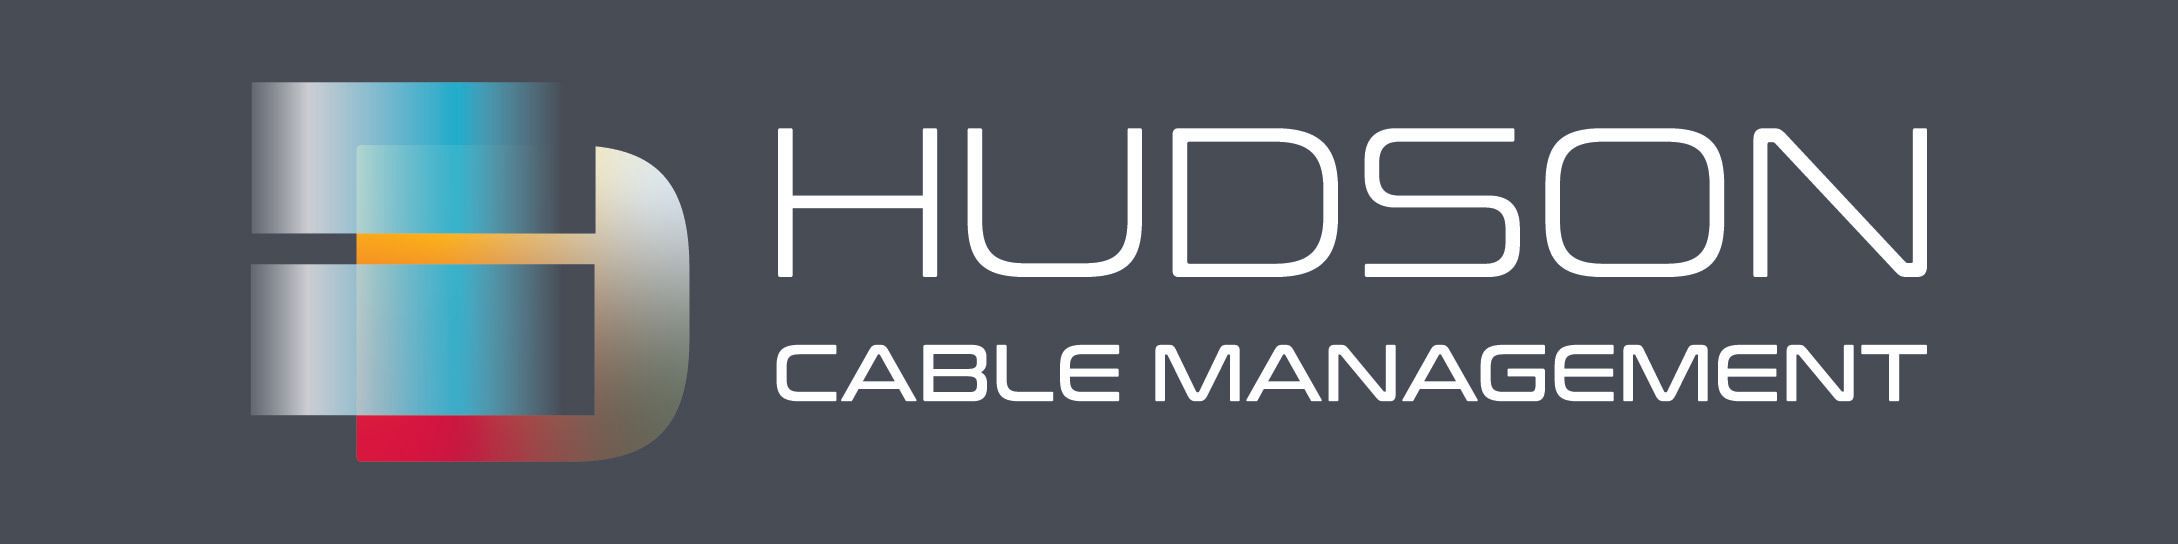 Hudson Cable Management Ltd